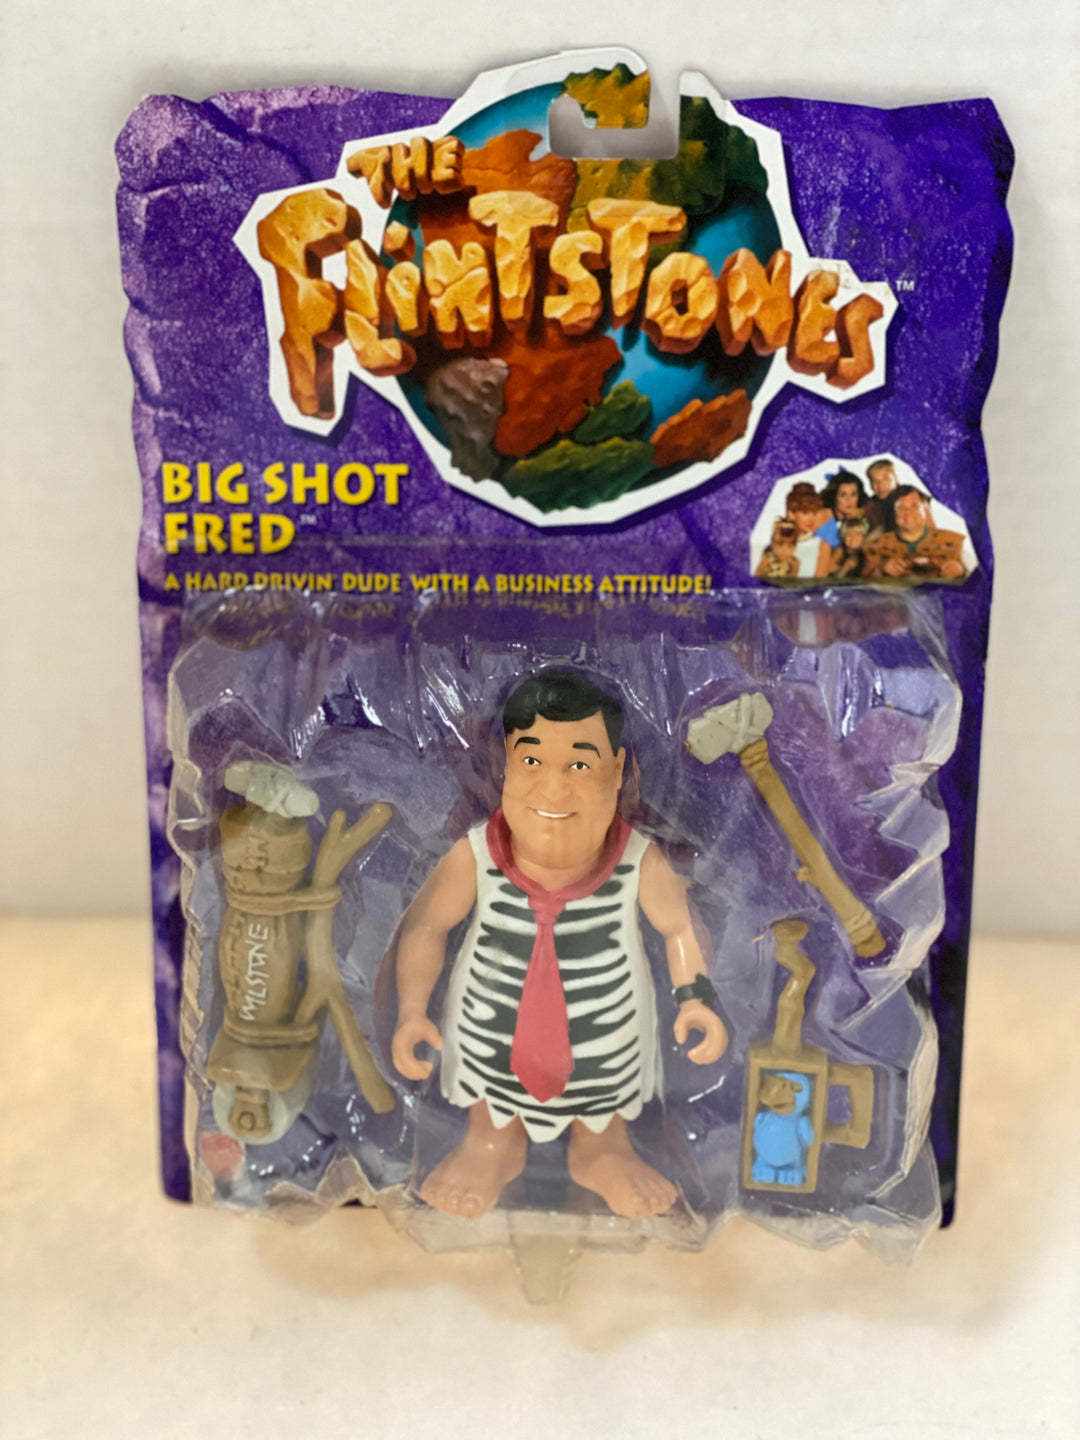 The Flintstones Big Shot Fred 1993 Mattel Sealed on Card